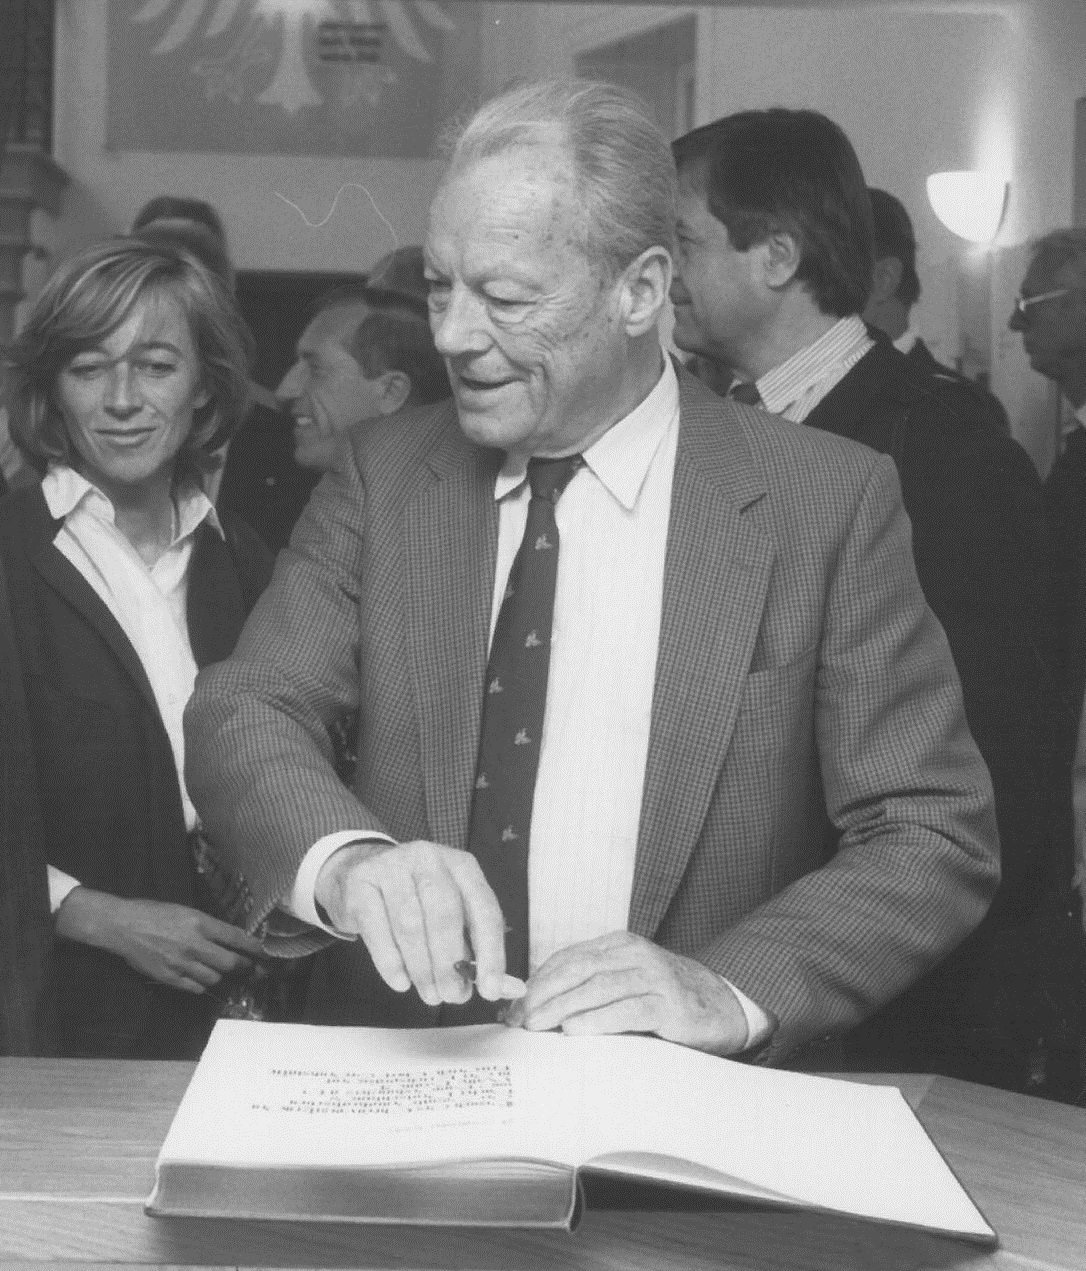 Der ehemalige Bundeskanzler Willy Brandt beim Eintrag in das Gästebuch, 1990